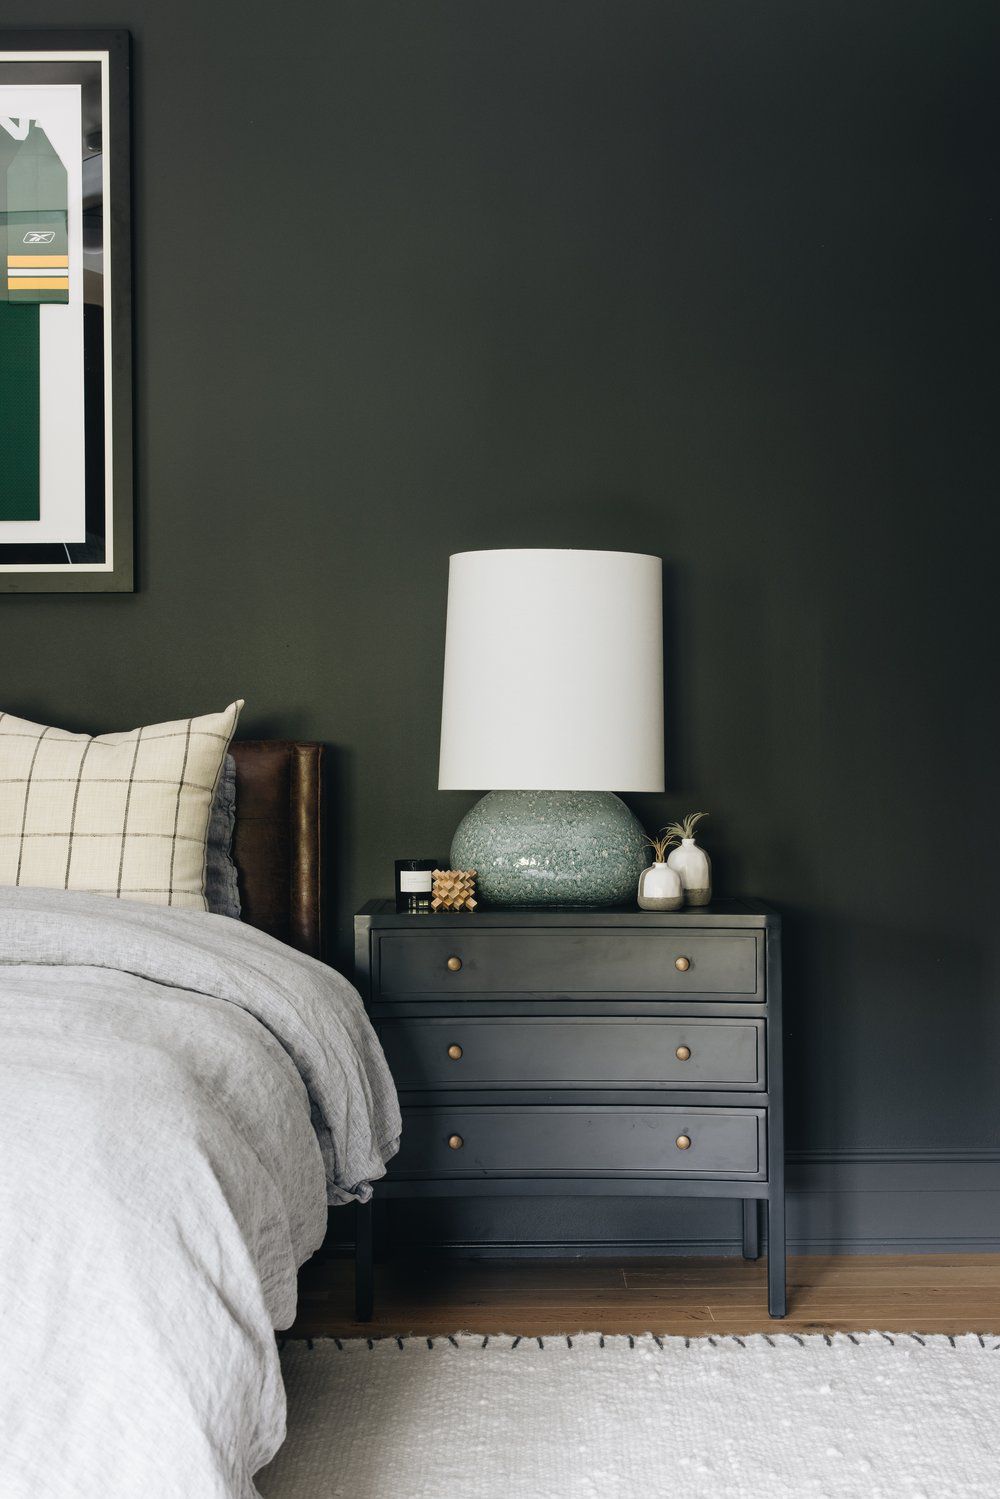 Dunkelgrüne Wand in einem Schlafzimmer hinter einem Lederkopfteil